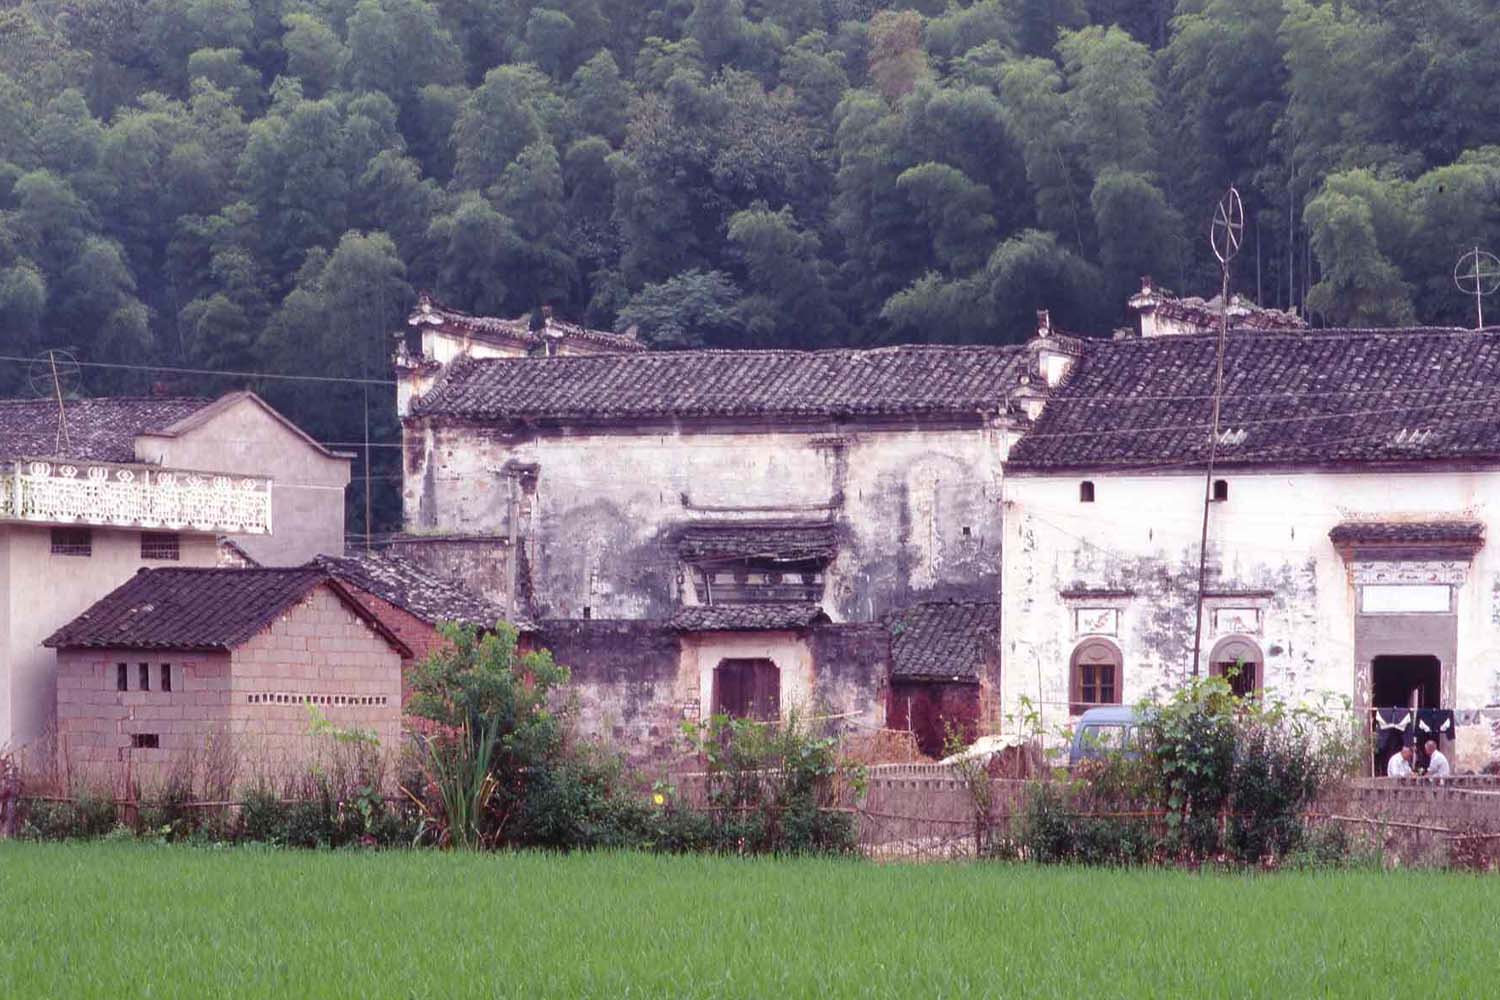 The Yin Yu House